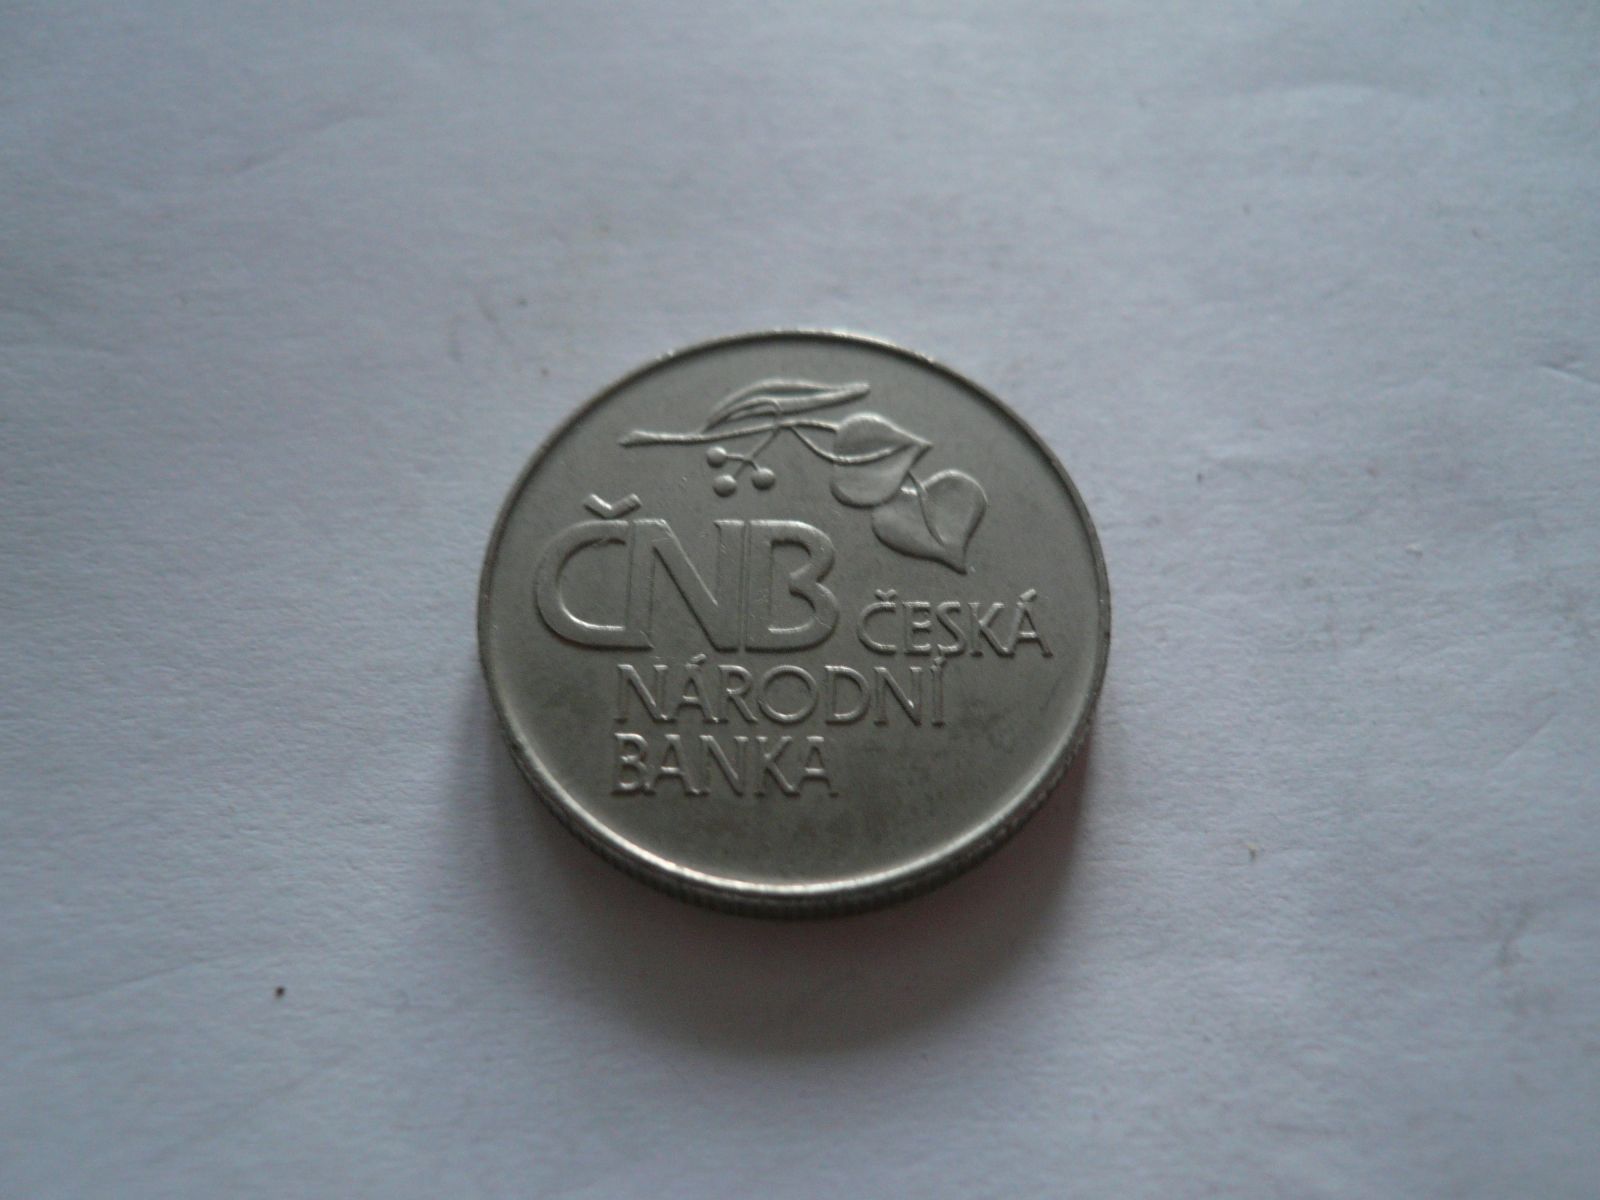 Česká národní banka, ČSR